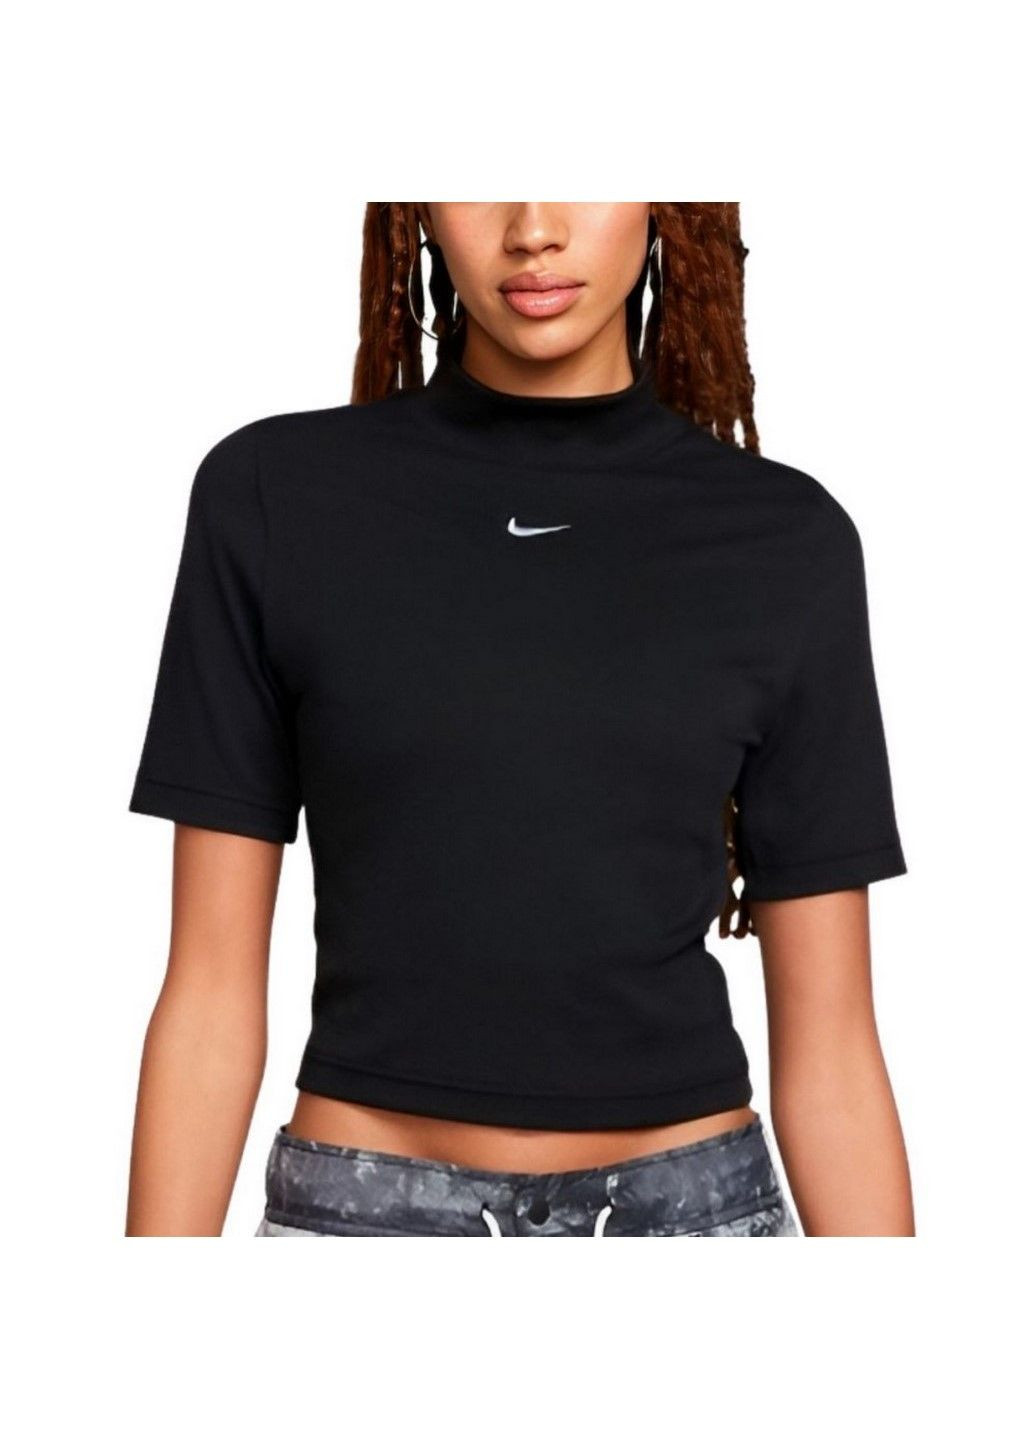 Черная летняя футболка w nsw essntl rib mock ss top dv7958-010 Nike